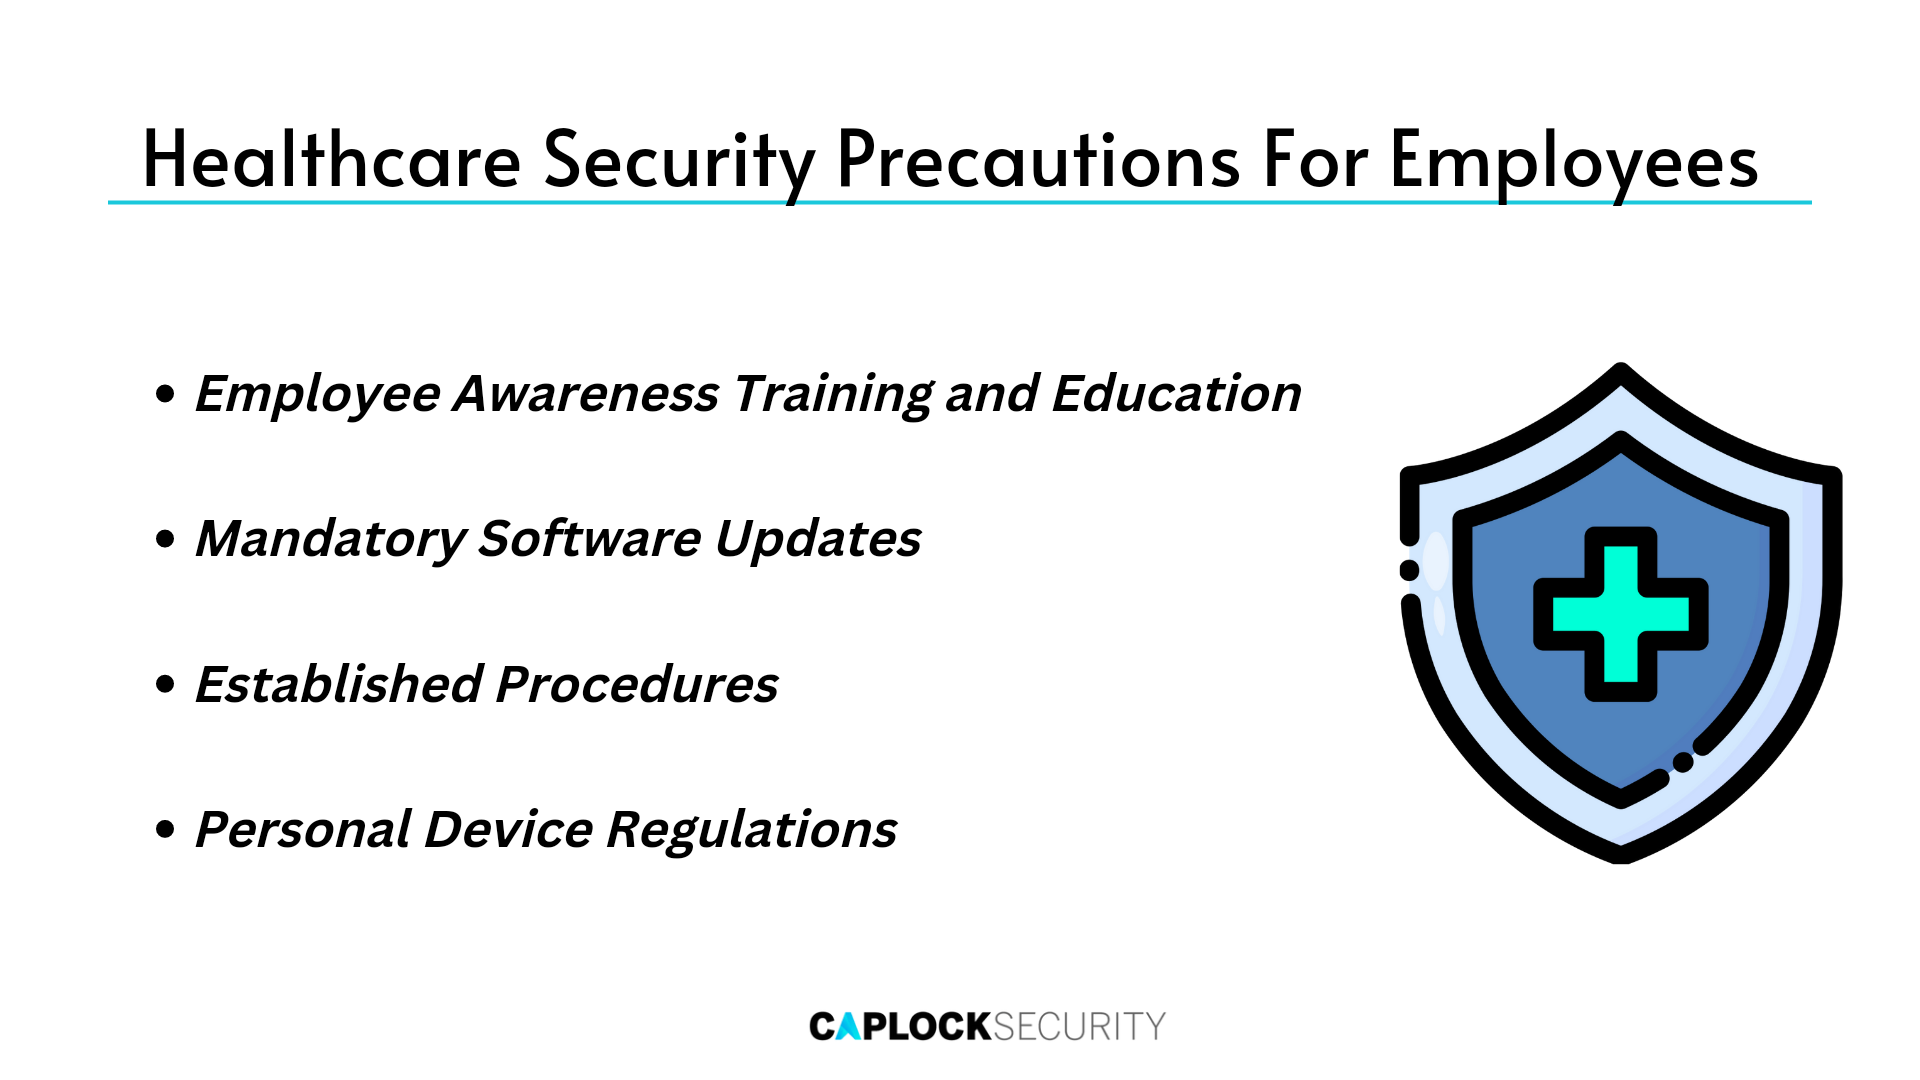 Healthcare Vulnerabilities Cybersecurity 2022